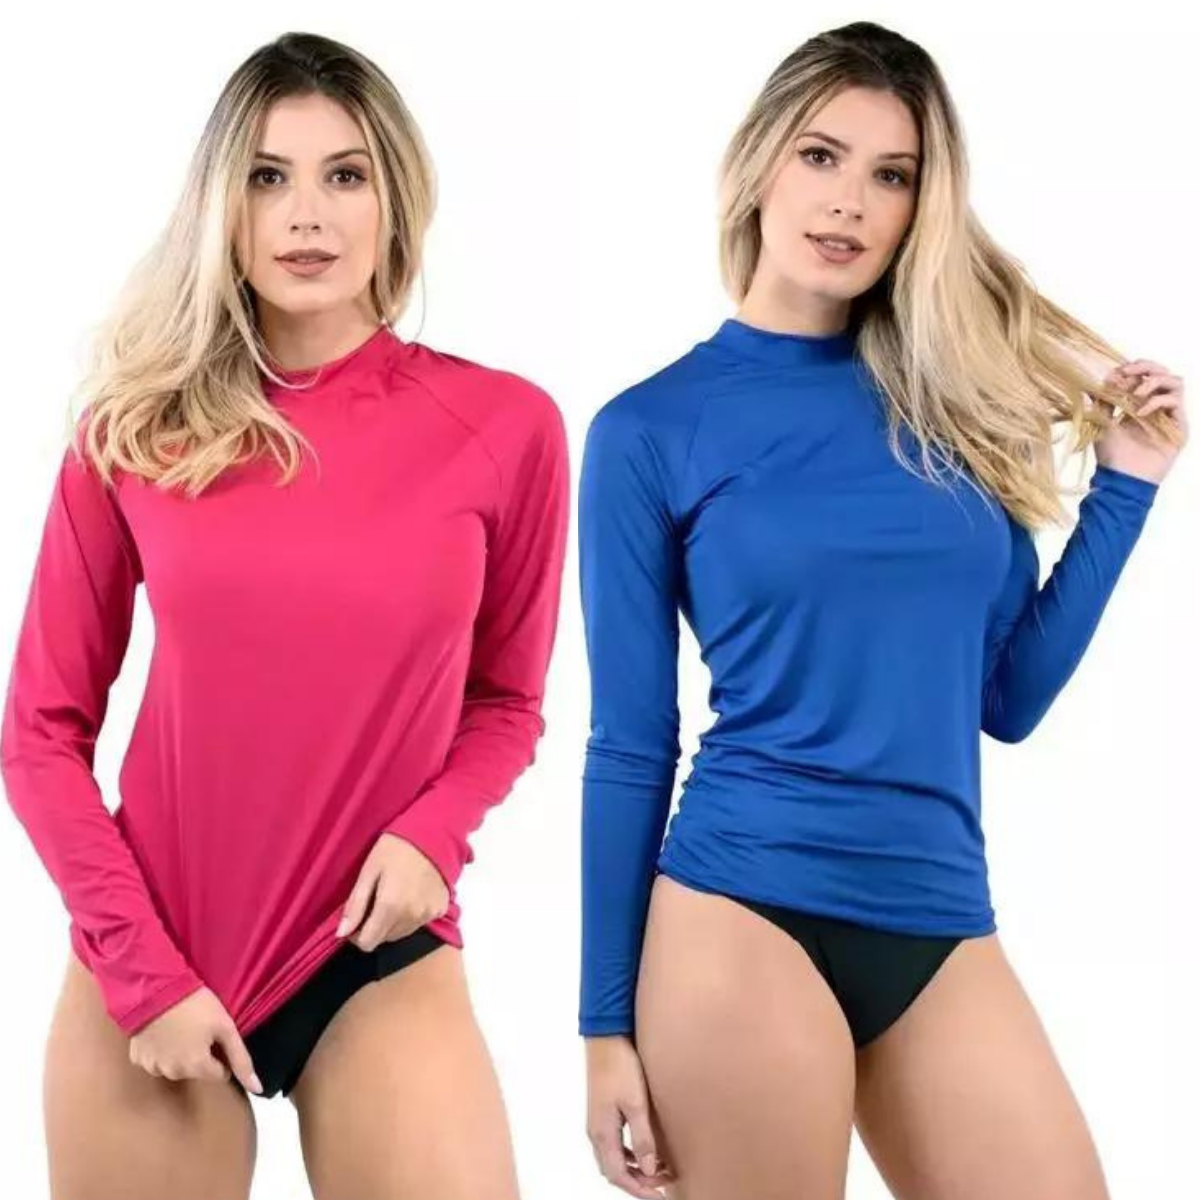 Camisa Térmica Feminina Manga Longa Proteção UV 50+